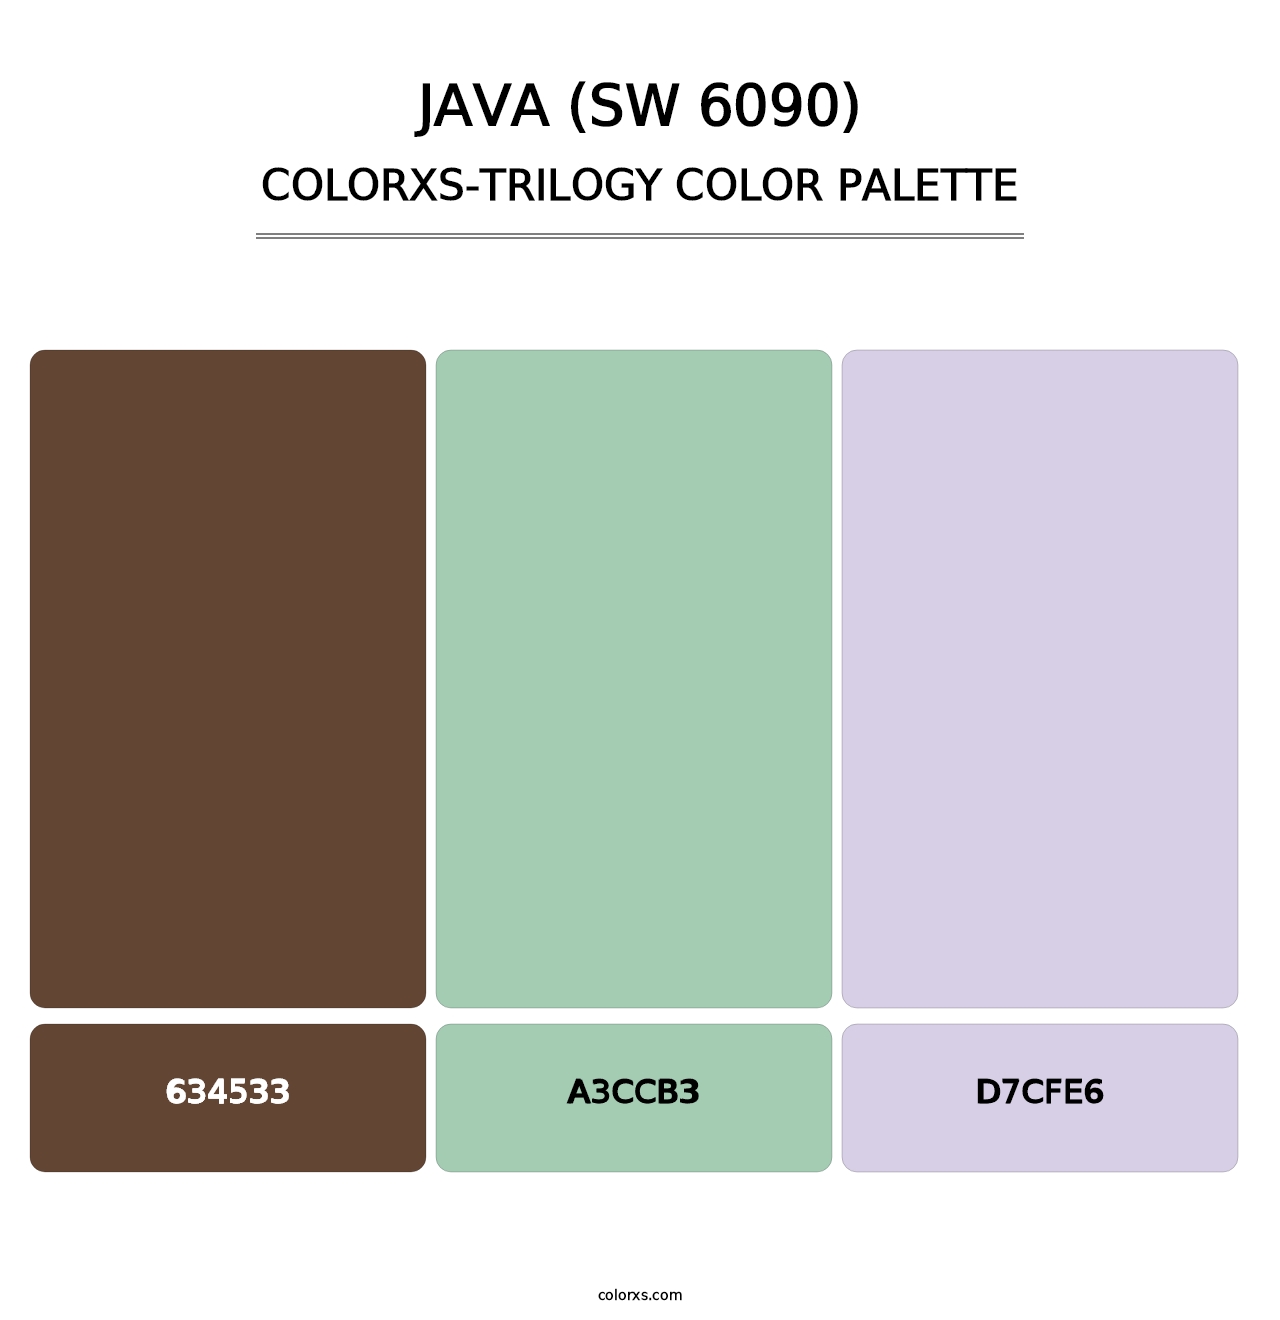 Java (SW 6090) - Colorxs Trilogy Palette